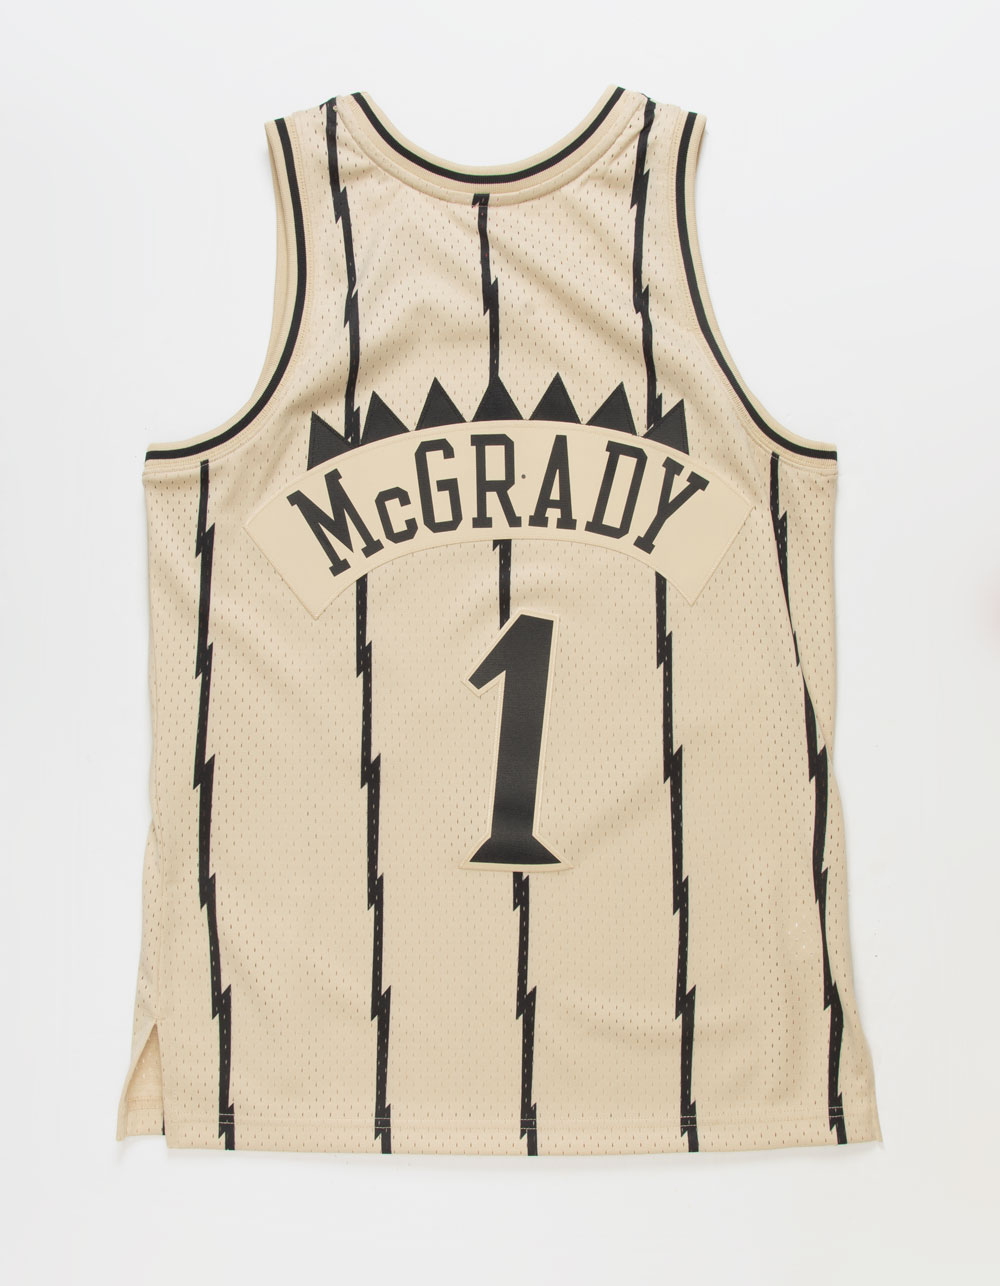 Tracy McGrady Toronto Raptors Men's Swingman Jersey Relo 2.0 / L